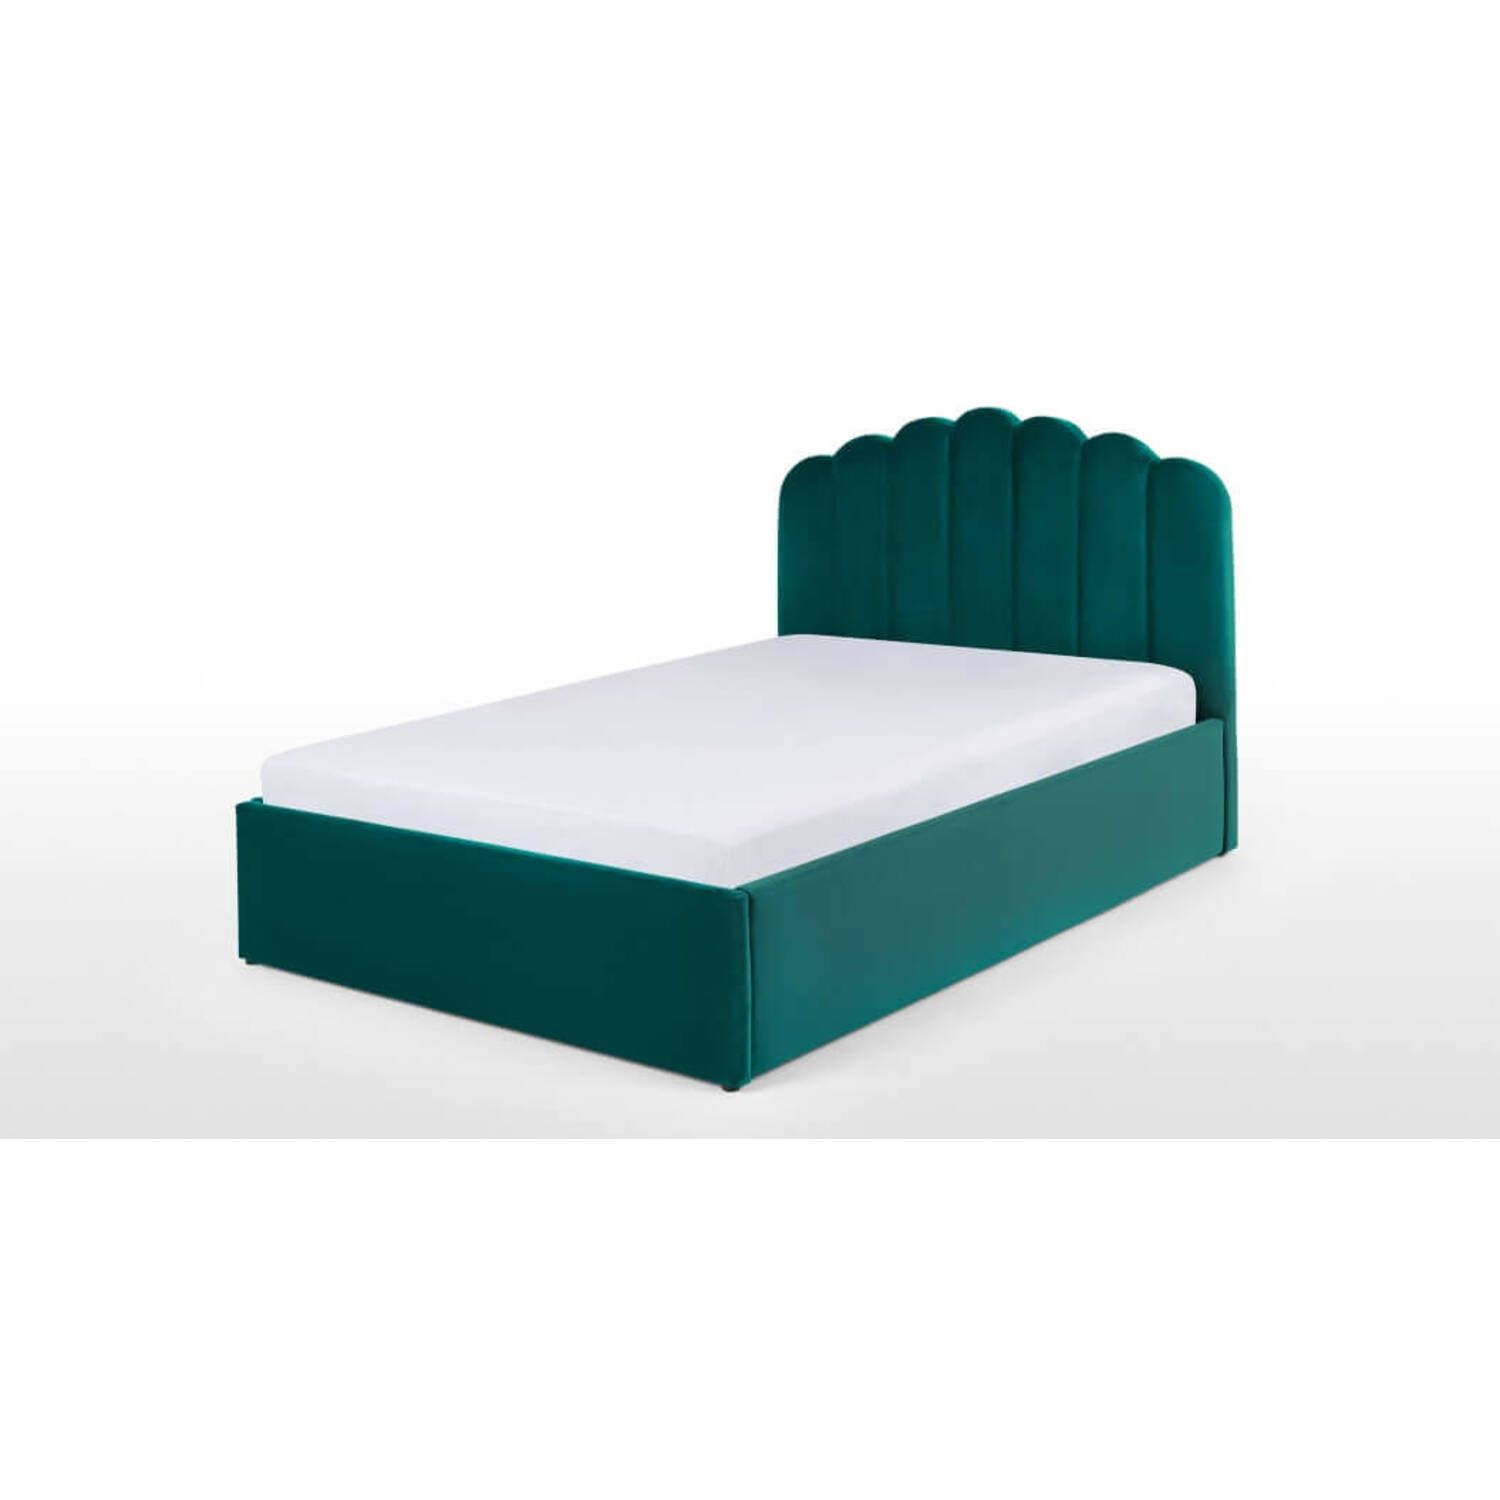 Кровать Delia с подъемным механизмом, зеленая